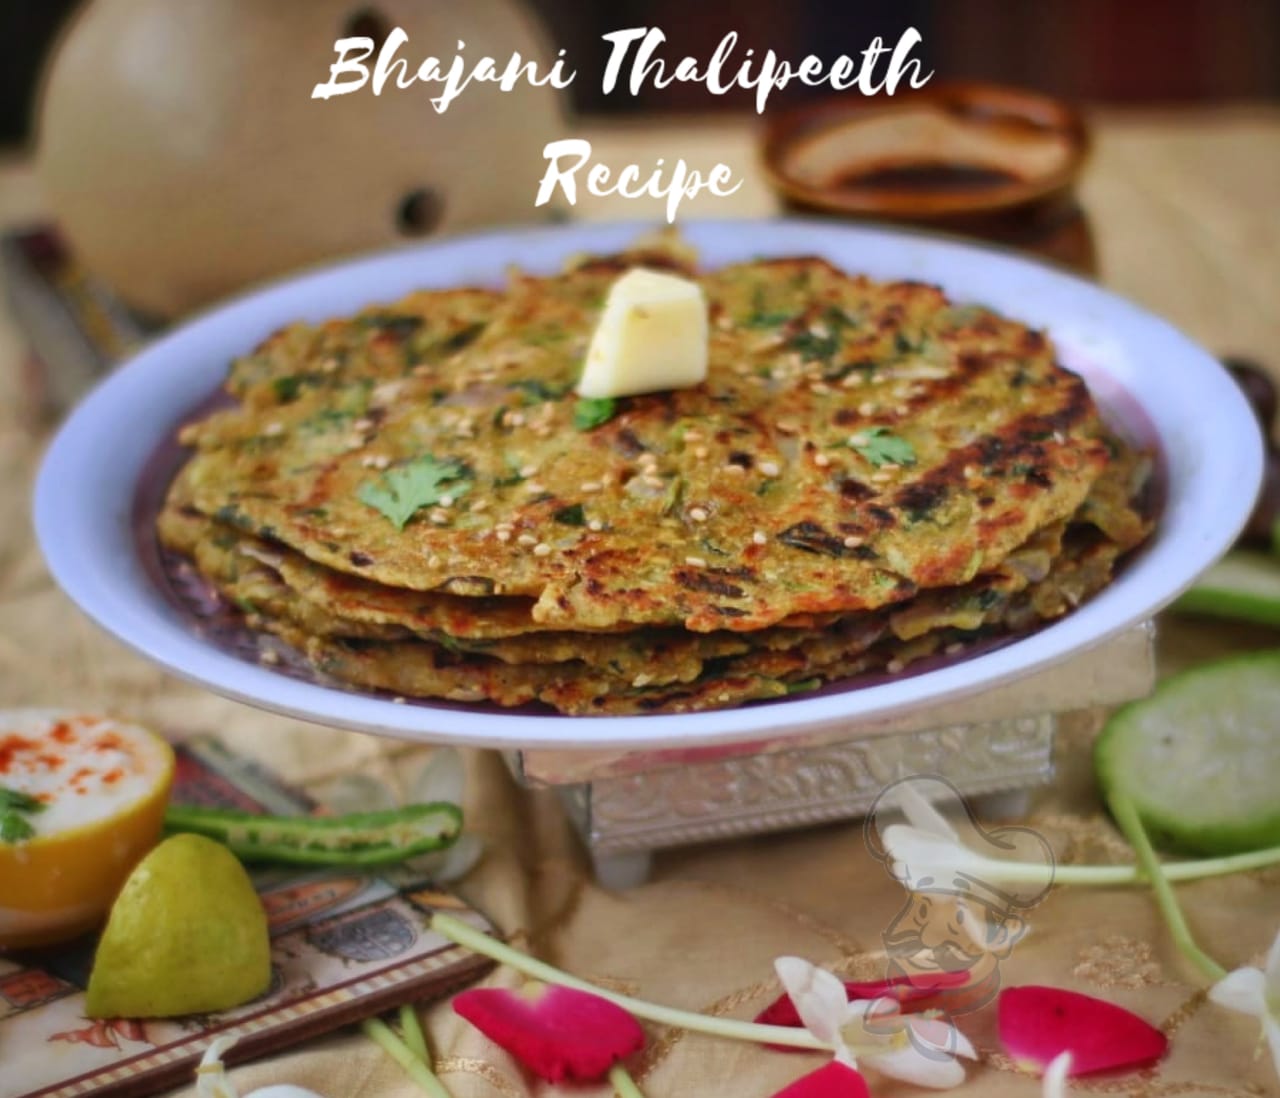 Bhajani Thaleepeeth recipe